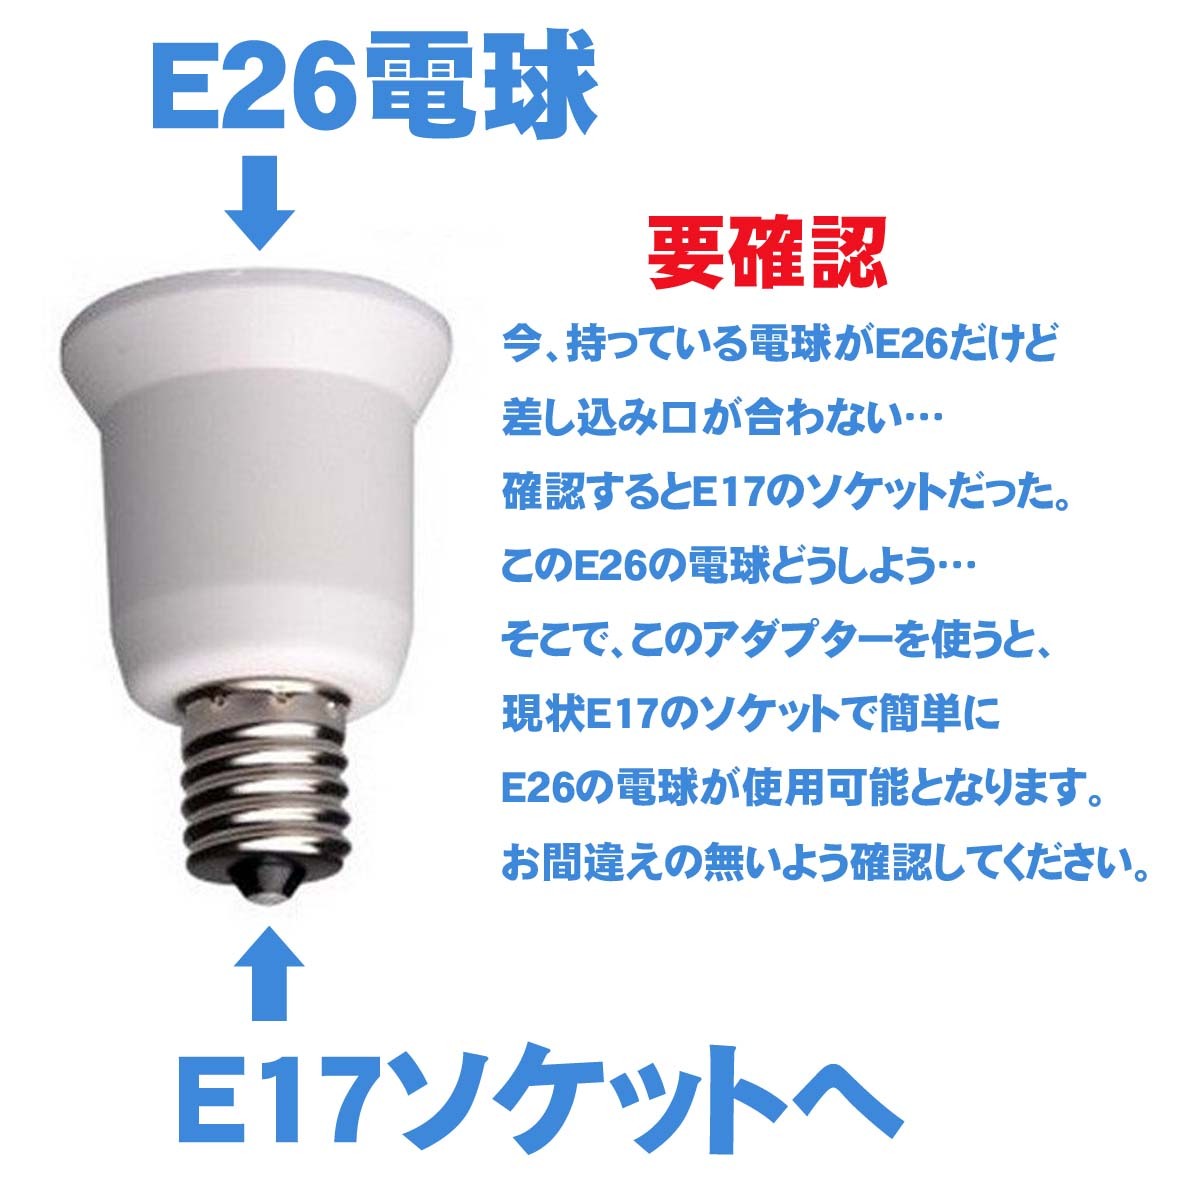 口金変換 E17→E26 アダブタ 電球 ソケット 蛍光灯 白熱球 LED球 2個セット 照明器具部品